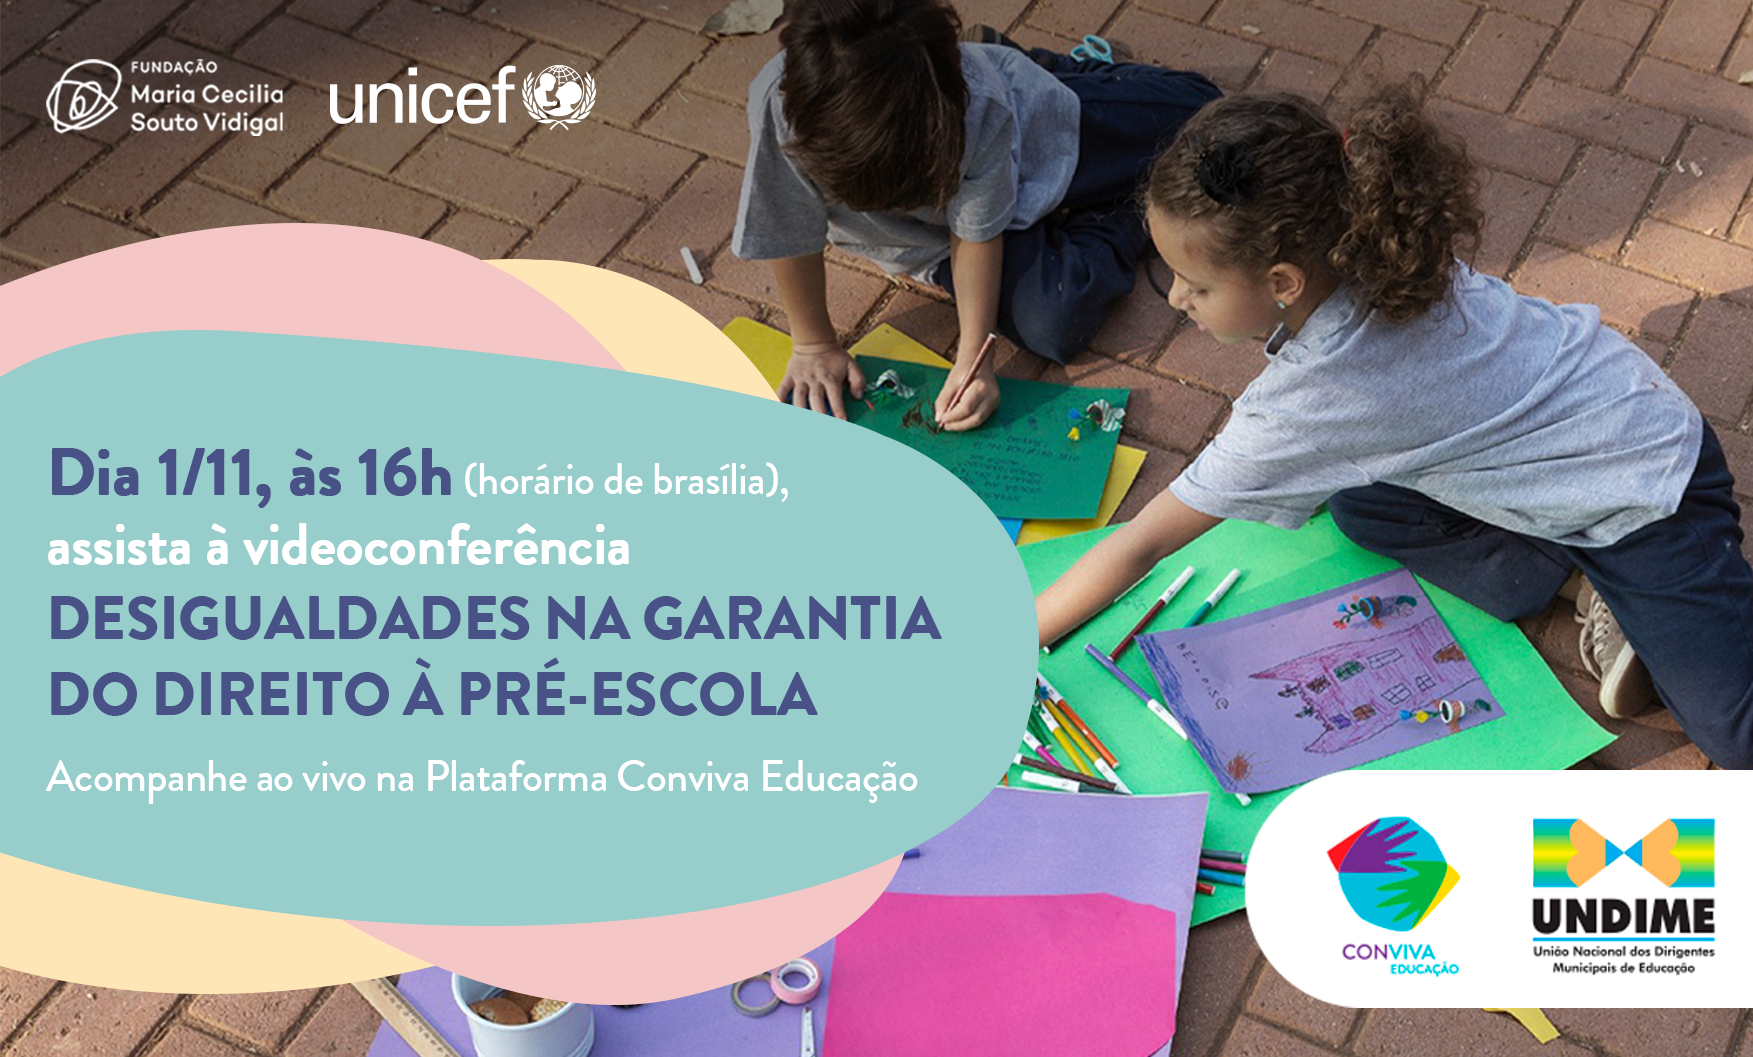 Desigualdades na garantia do direito à pré-escola: videoconferência vai apresentar a publicação elaborada com apoio da Undime e UNICEF